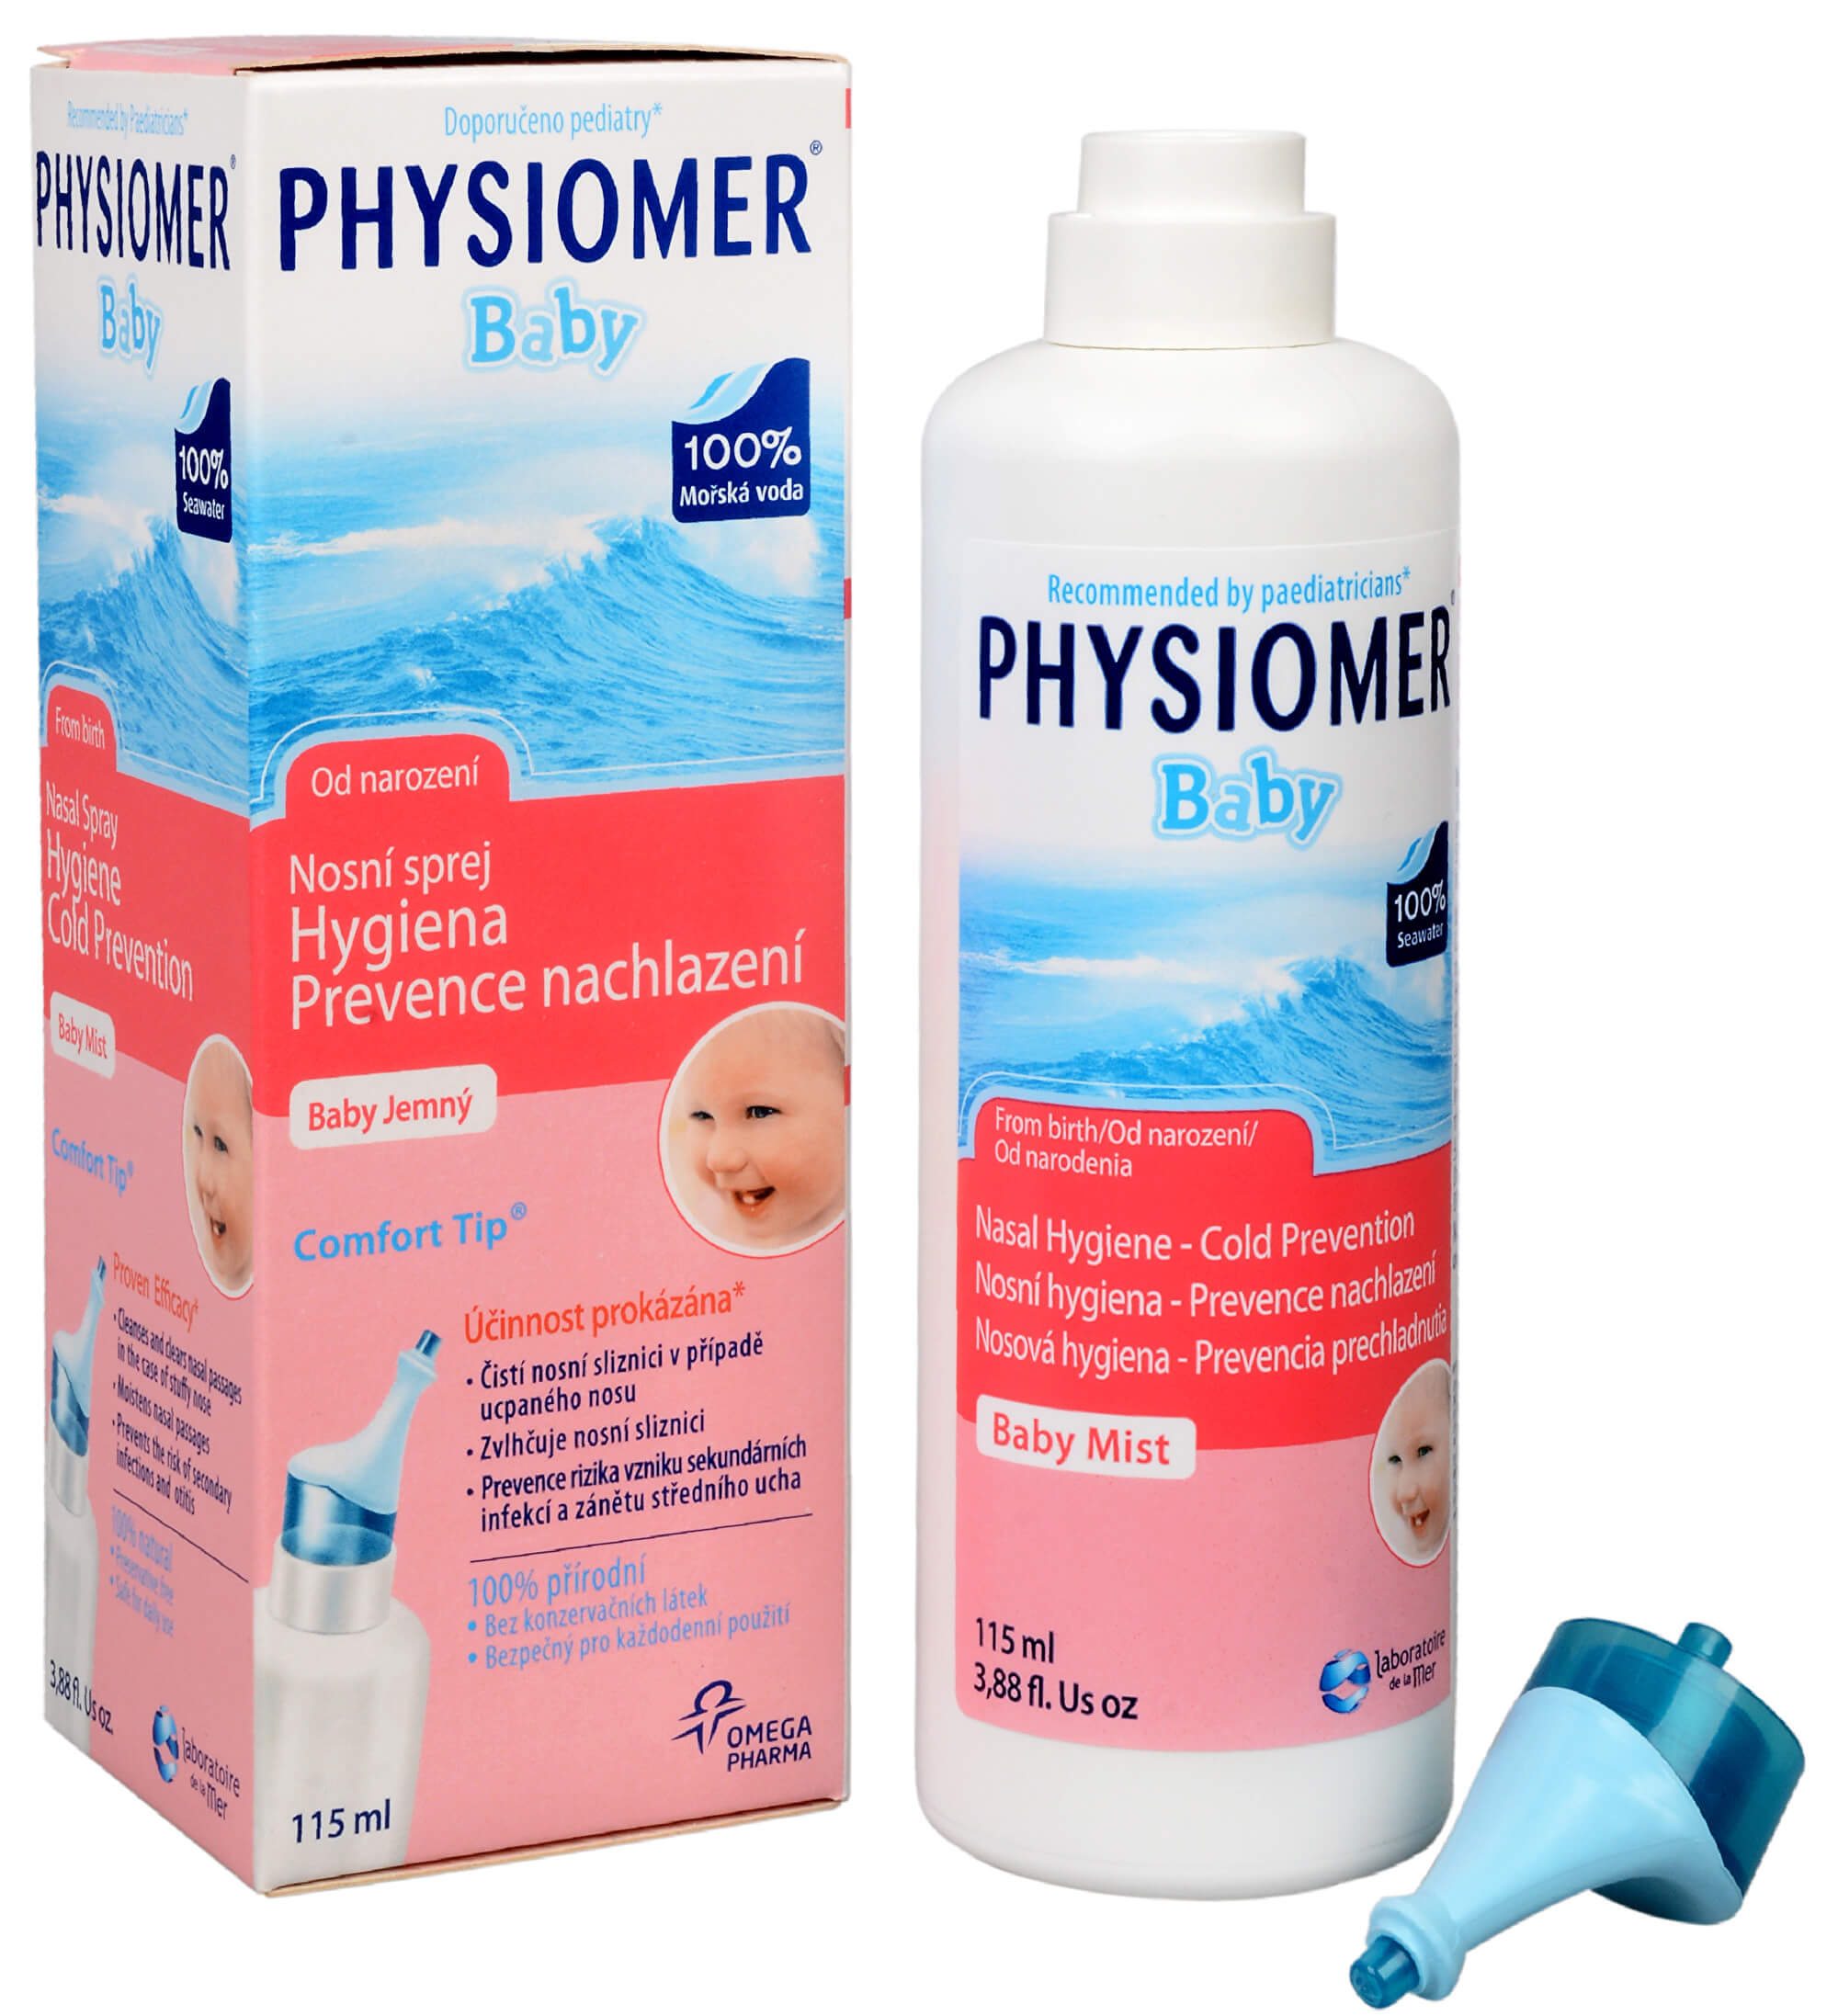 Omega Pharma Physiomer Baby 115 ml + 2 mesiace na vrátenie tovaru